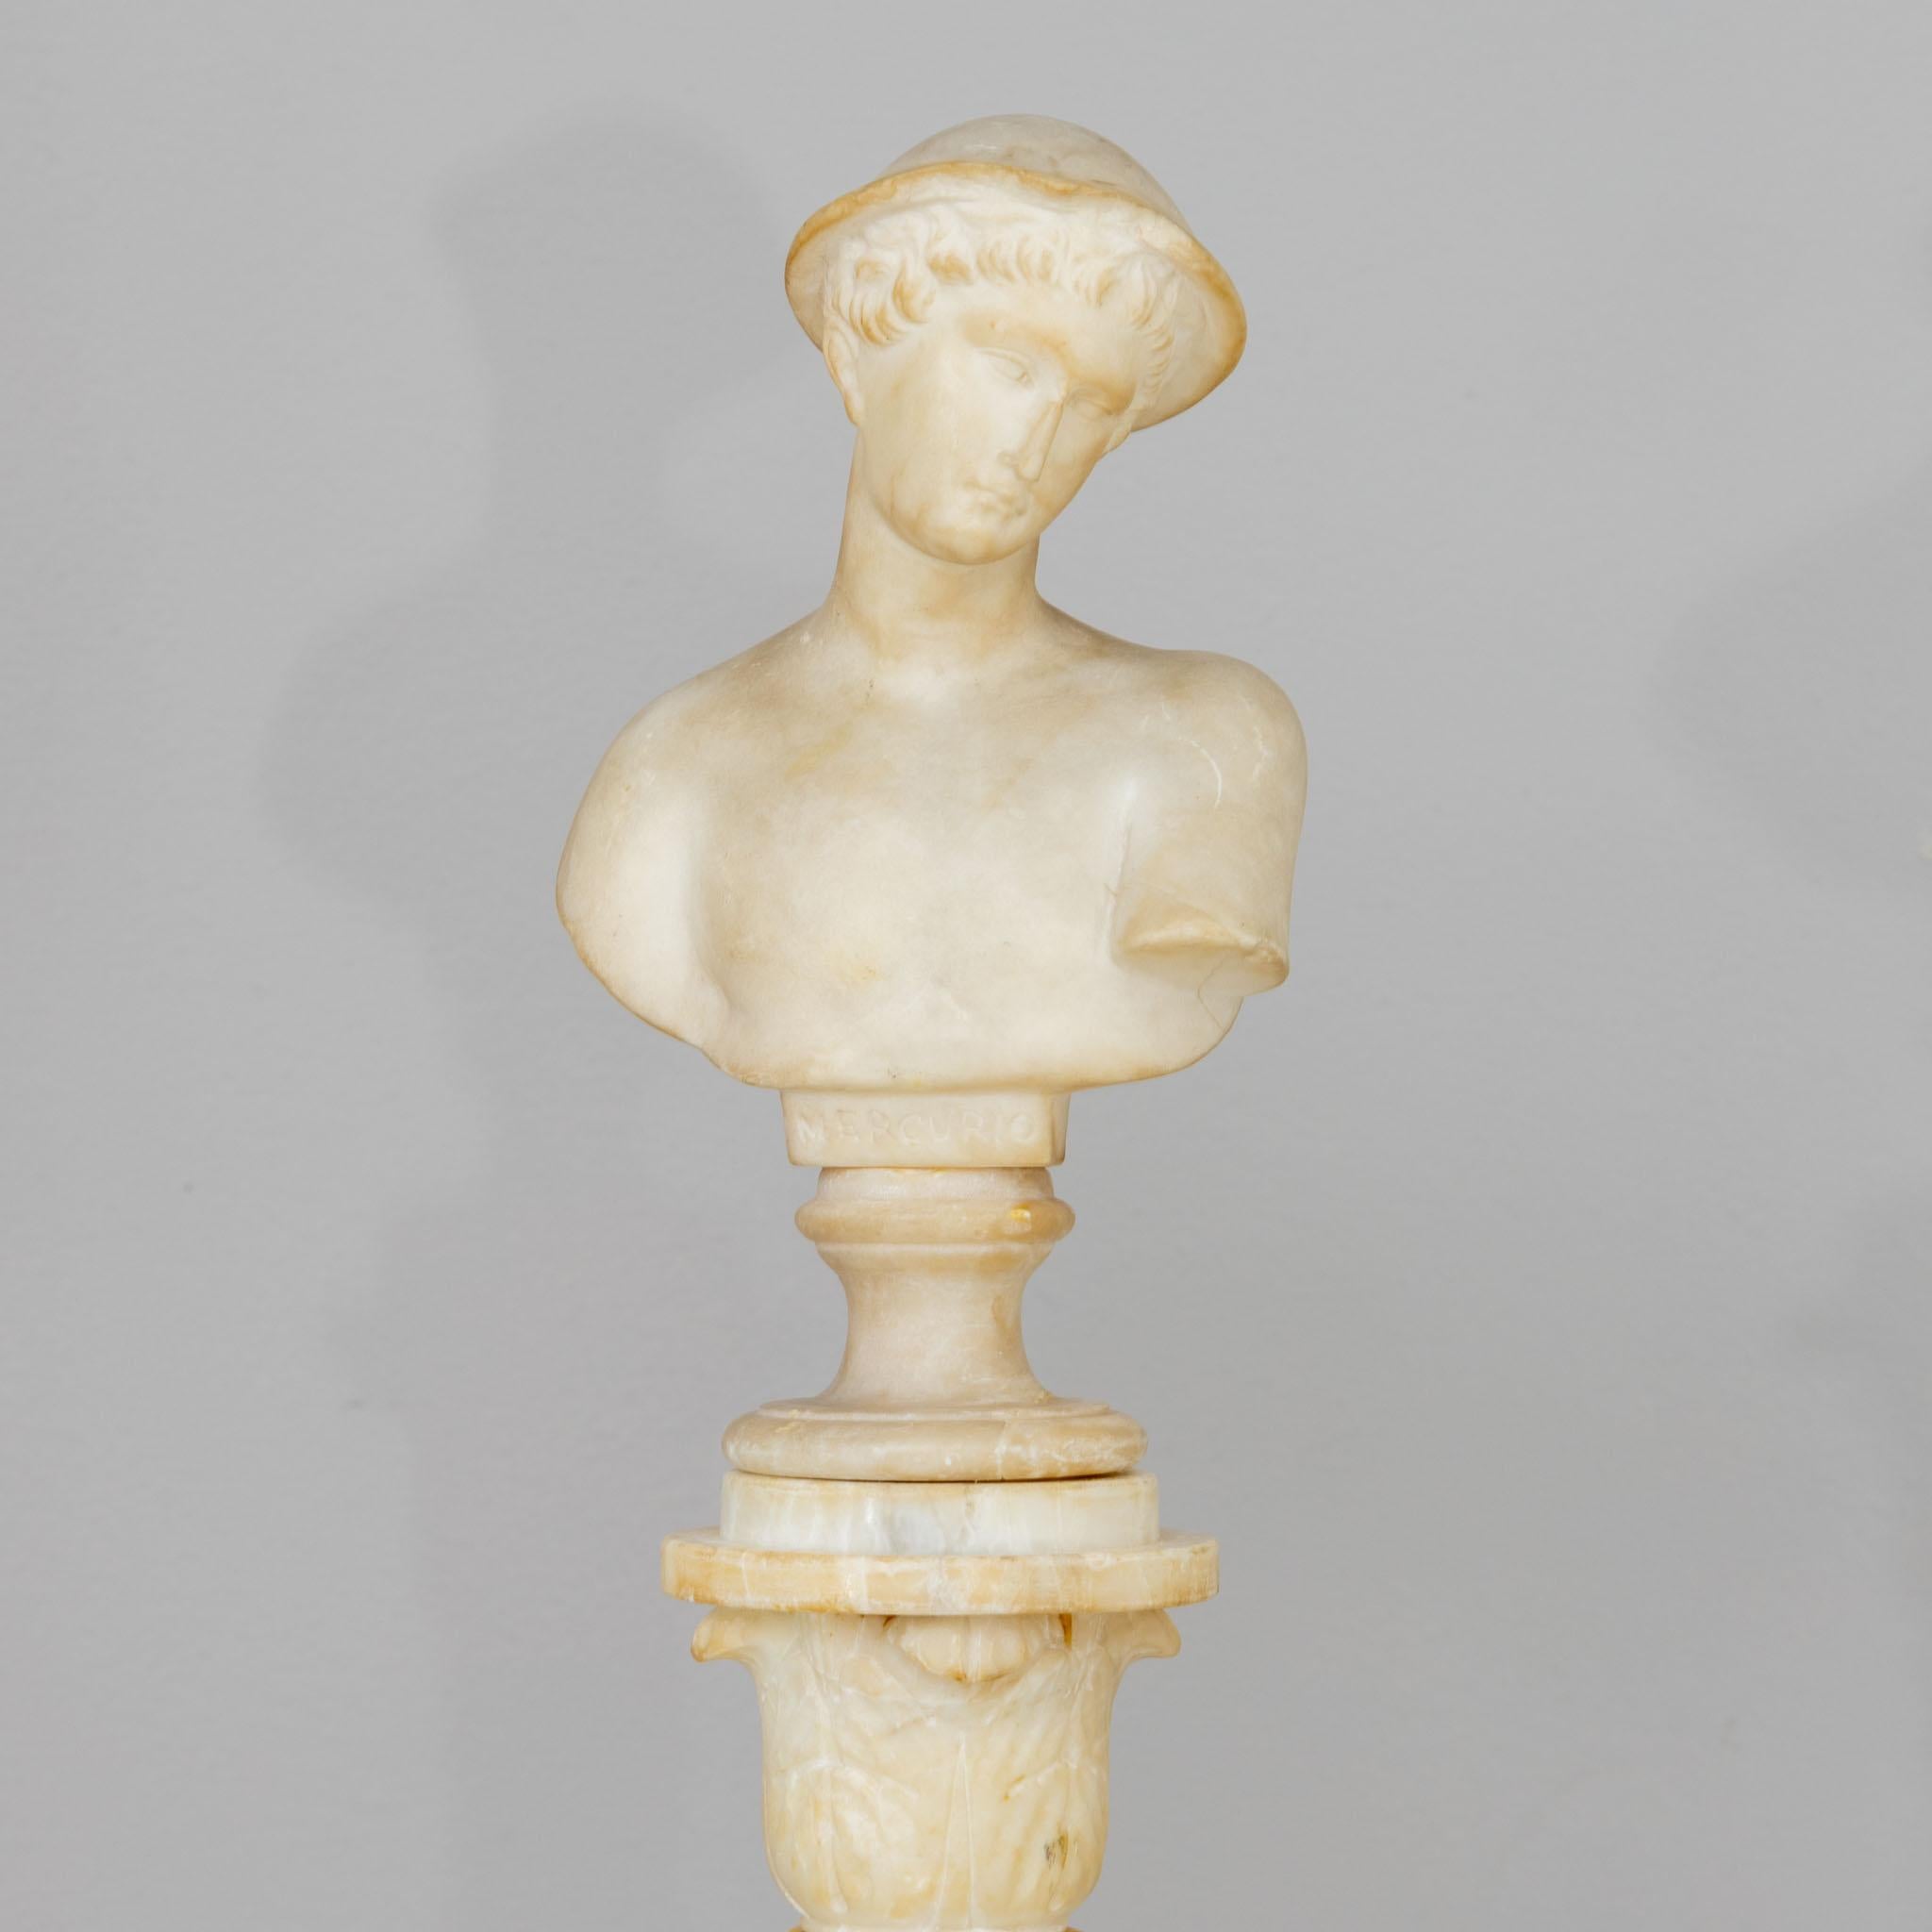 Grand Tour Marriage in Alabaster mit Büste des Merkur (Inschrift Mercurio) auf einer gedrehten Säule mit blattgeschmücktem Kapitell und quadratischer Basis.